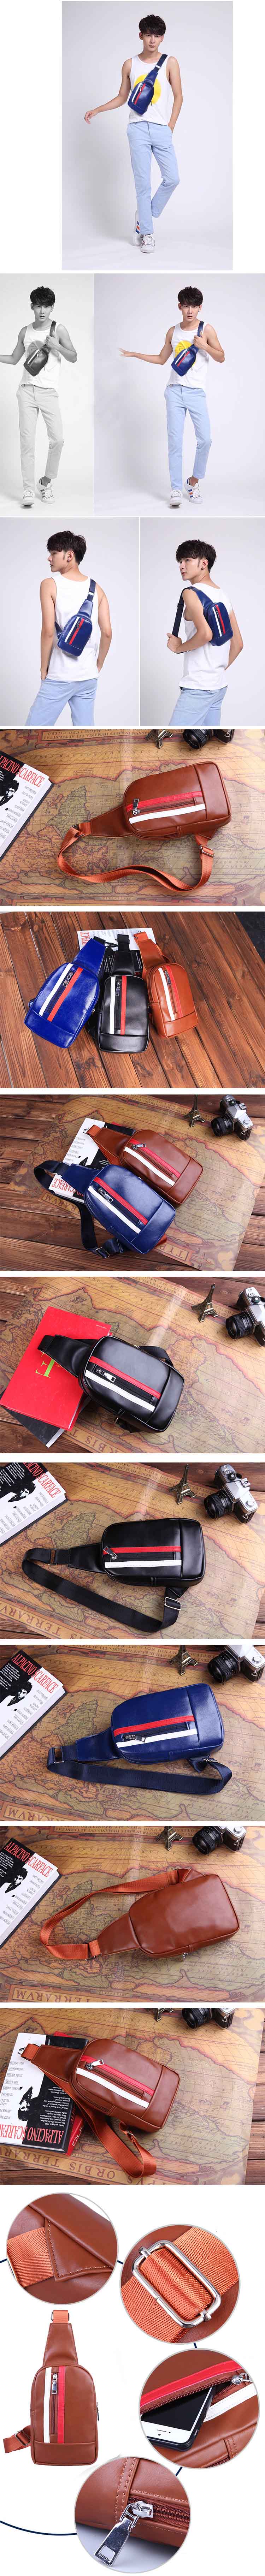 jual tas gadget keren untuk pria modern, temukan koleksi tas gadget keren model korea dengan desain simple dan menarik hanya di pfpstore